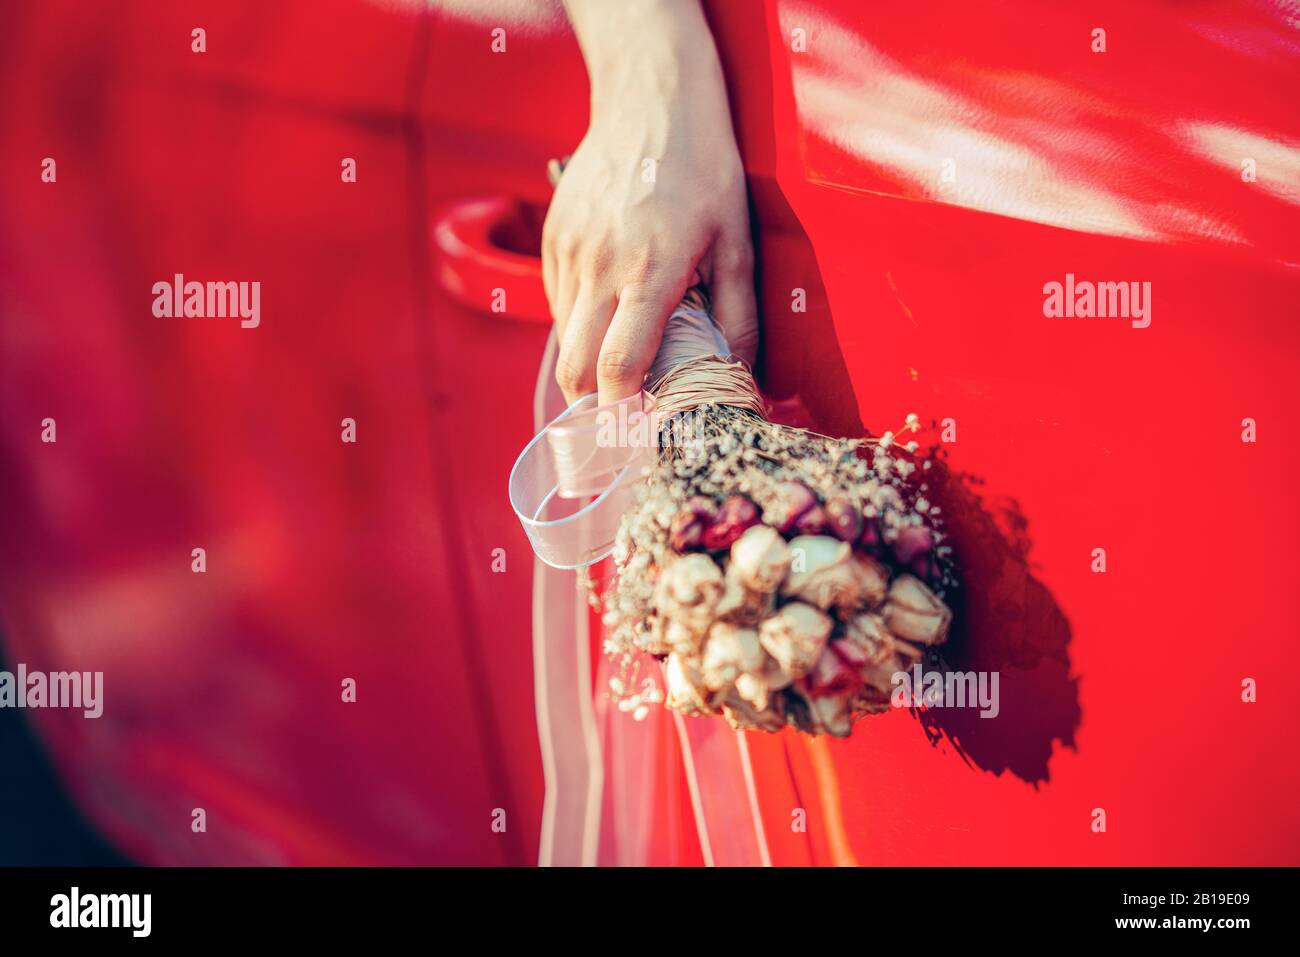 Die Braute, die den Blumenstrauß hält, winkelt ihn aus dem Fenster des roten Autos Stockfoto